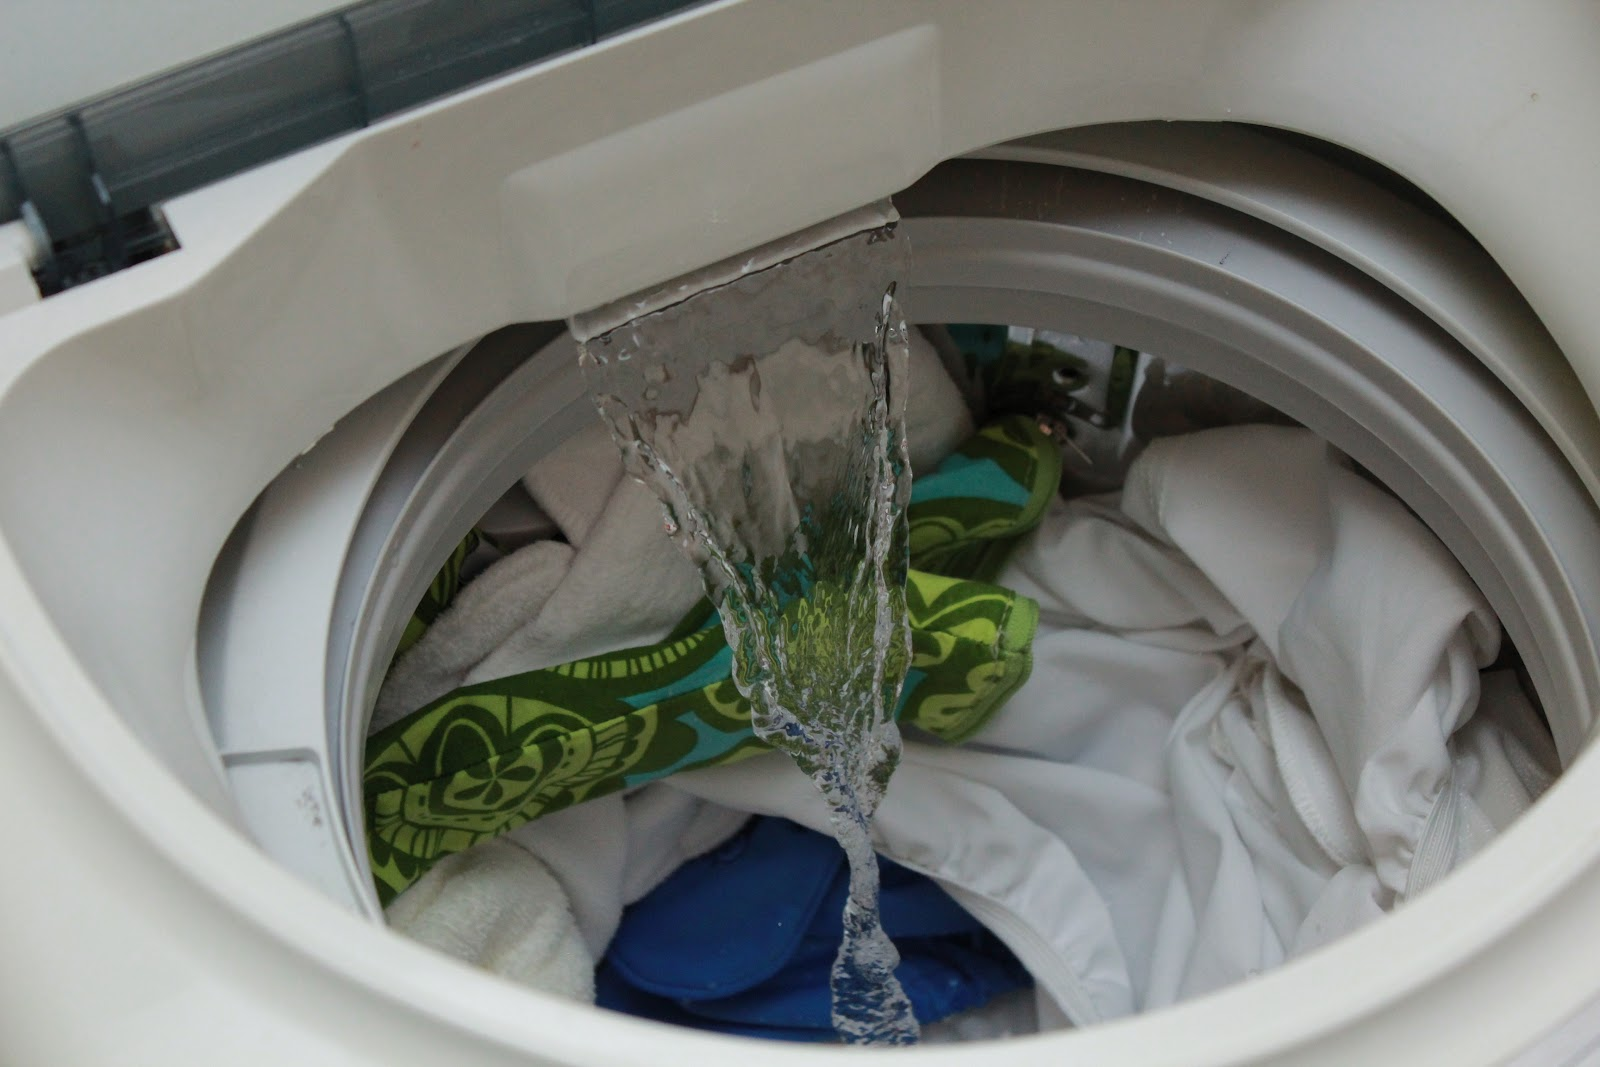 Lỗi IE máy giặt LG xảy ra do nguồn cấp nước không đủ mạnh 